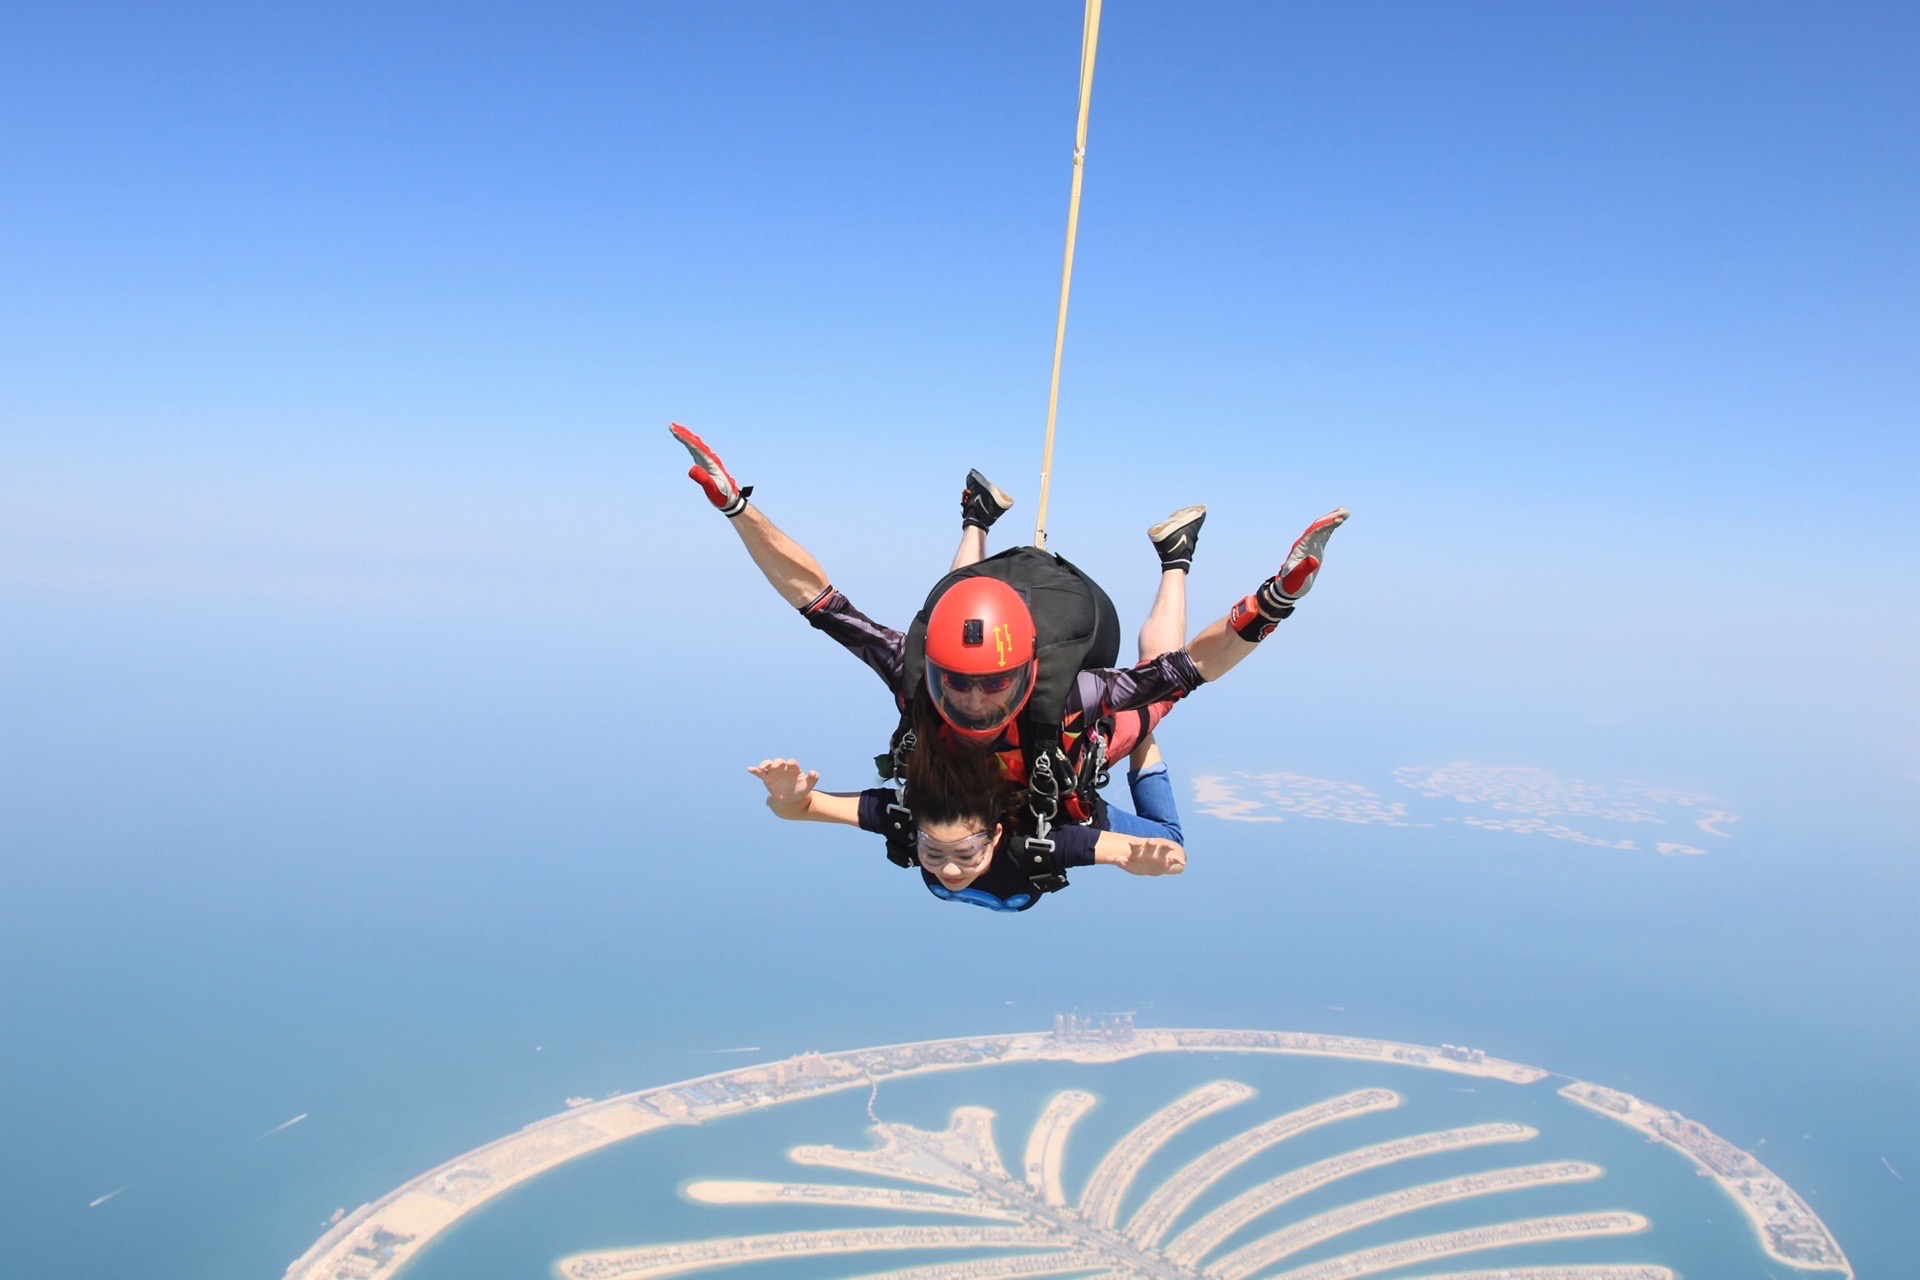 迪拜高空跳伞体验  来了迪拜怎么可以不跳伞，据说是全球最贵最美跳伞点了😂。先提前网上预约时间，可以选